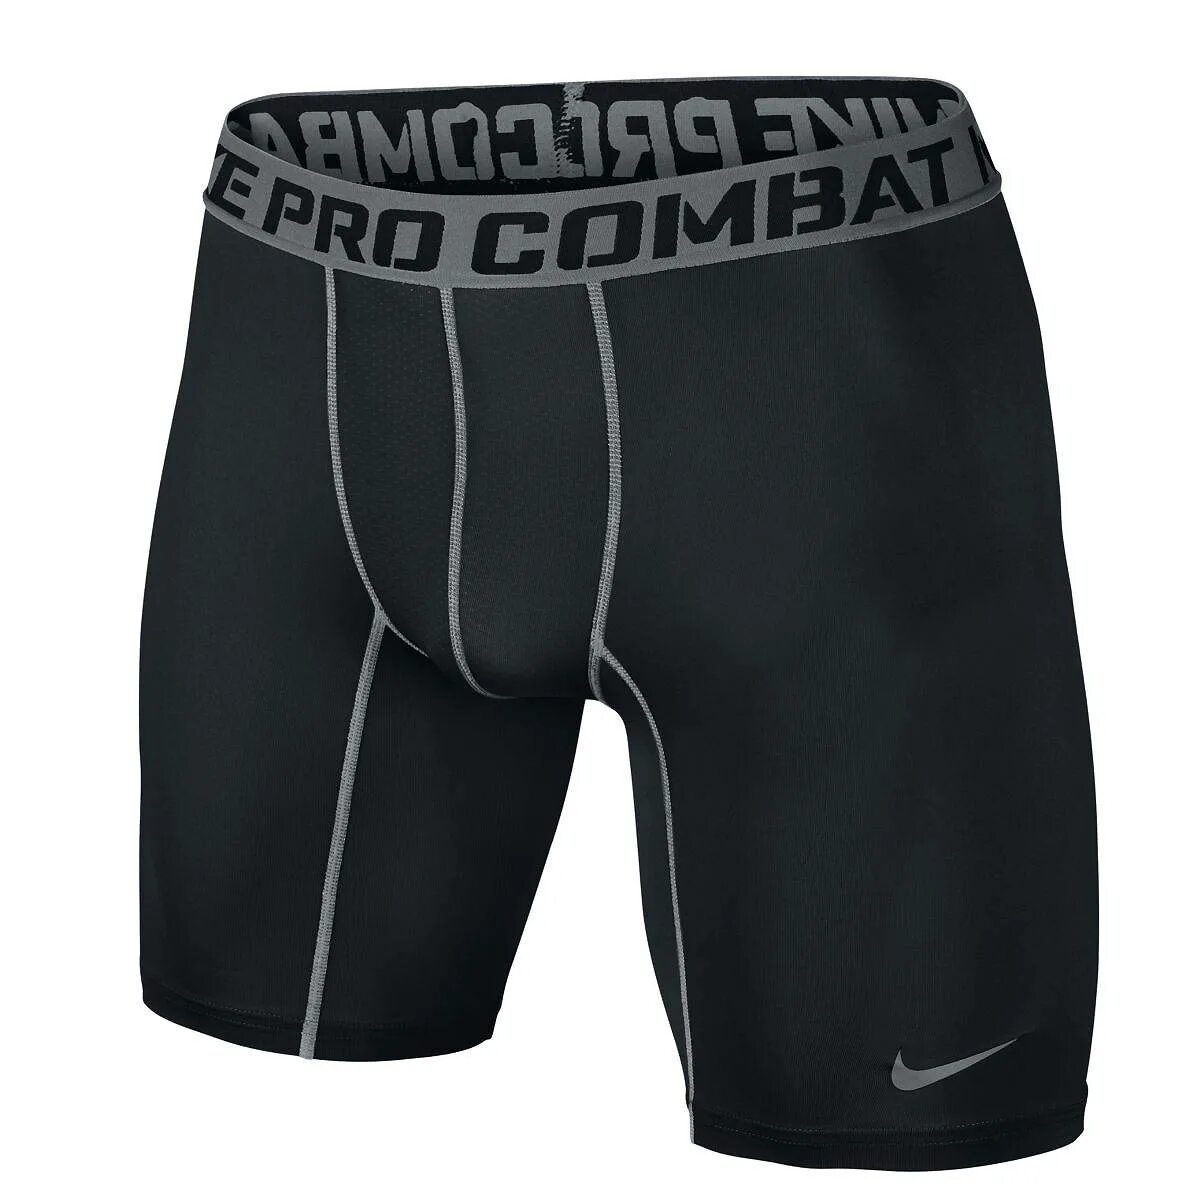 Компрессионка Nike Pro Combat. Компрессионные шорты Nike Pro Combat. Nike Pro Combat Dri-Fit Compression шорты. Термо Nike Pro Combat.